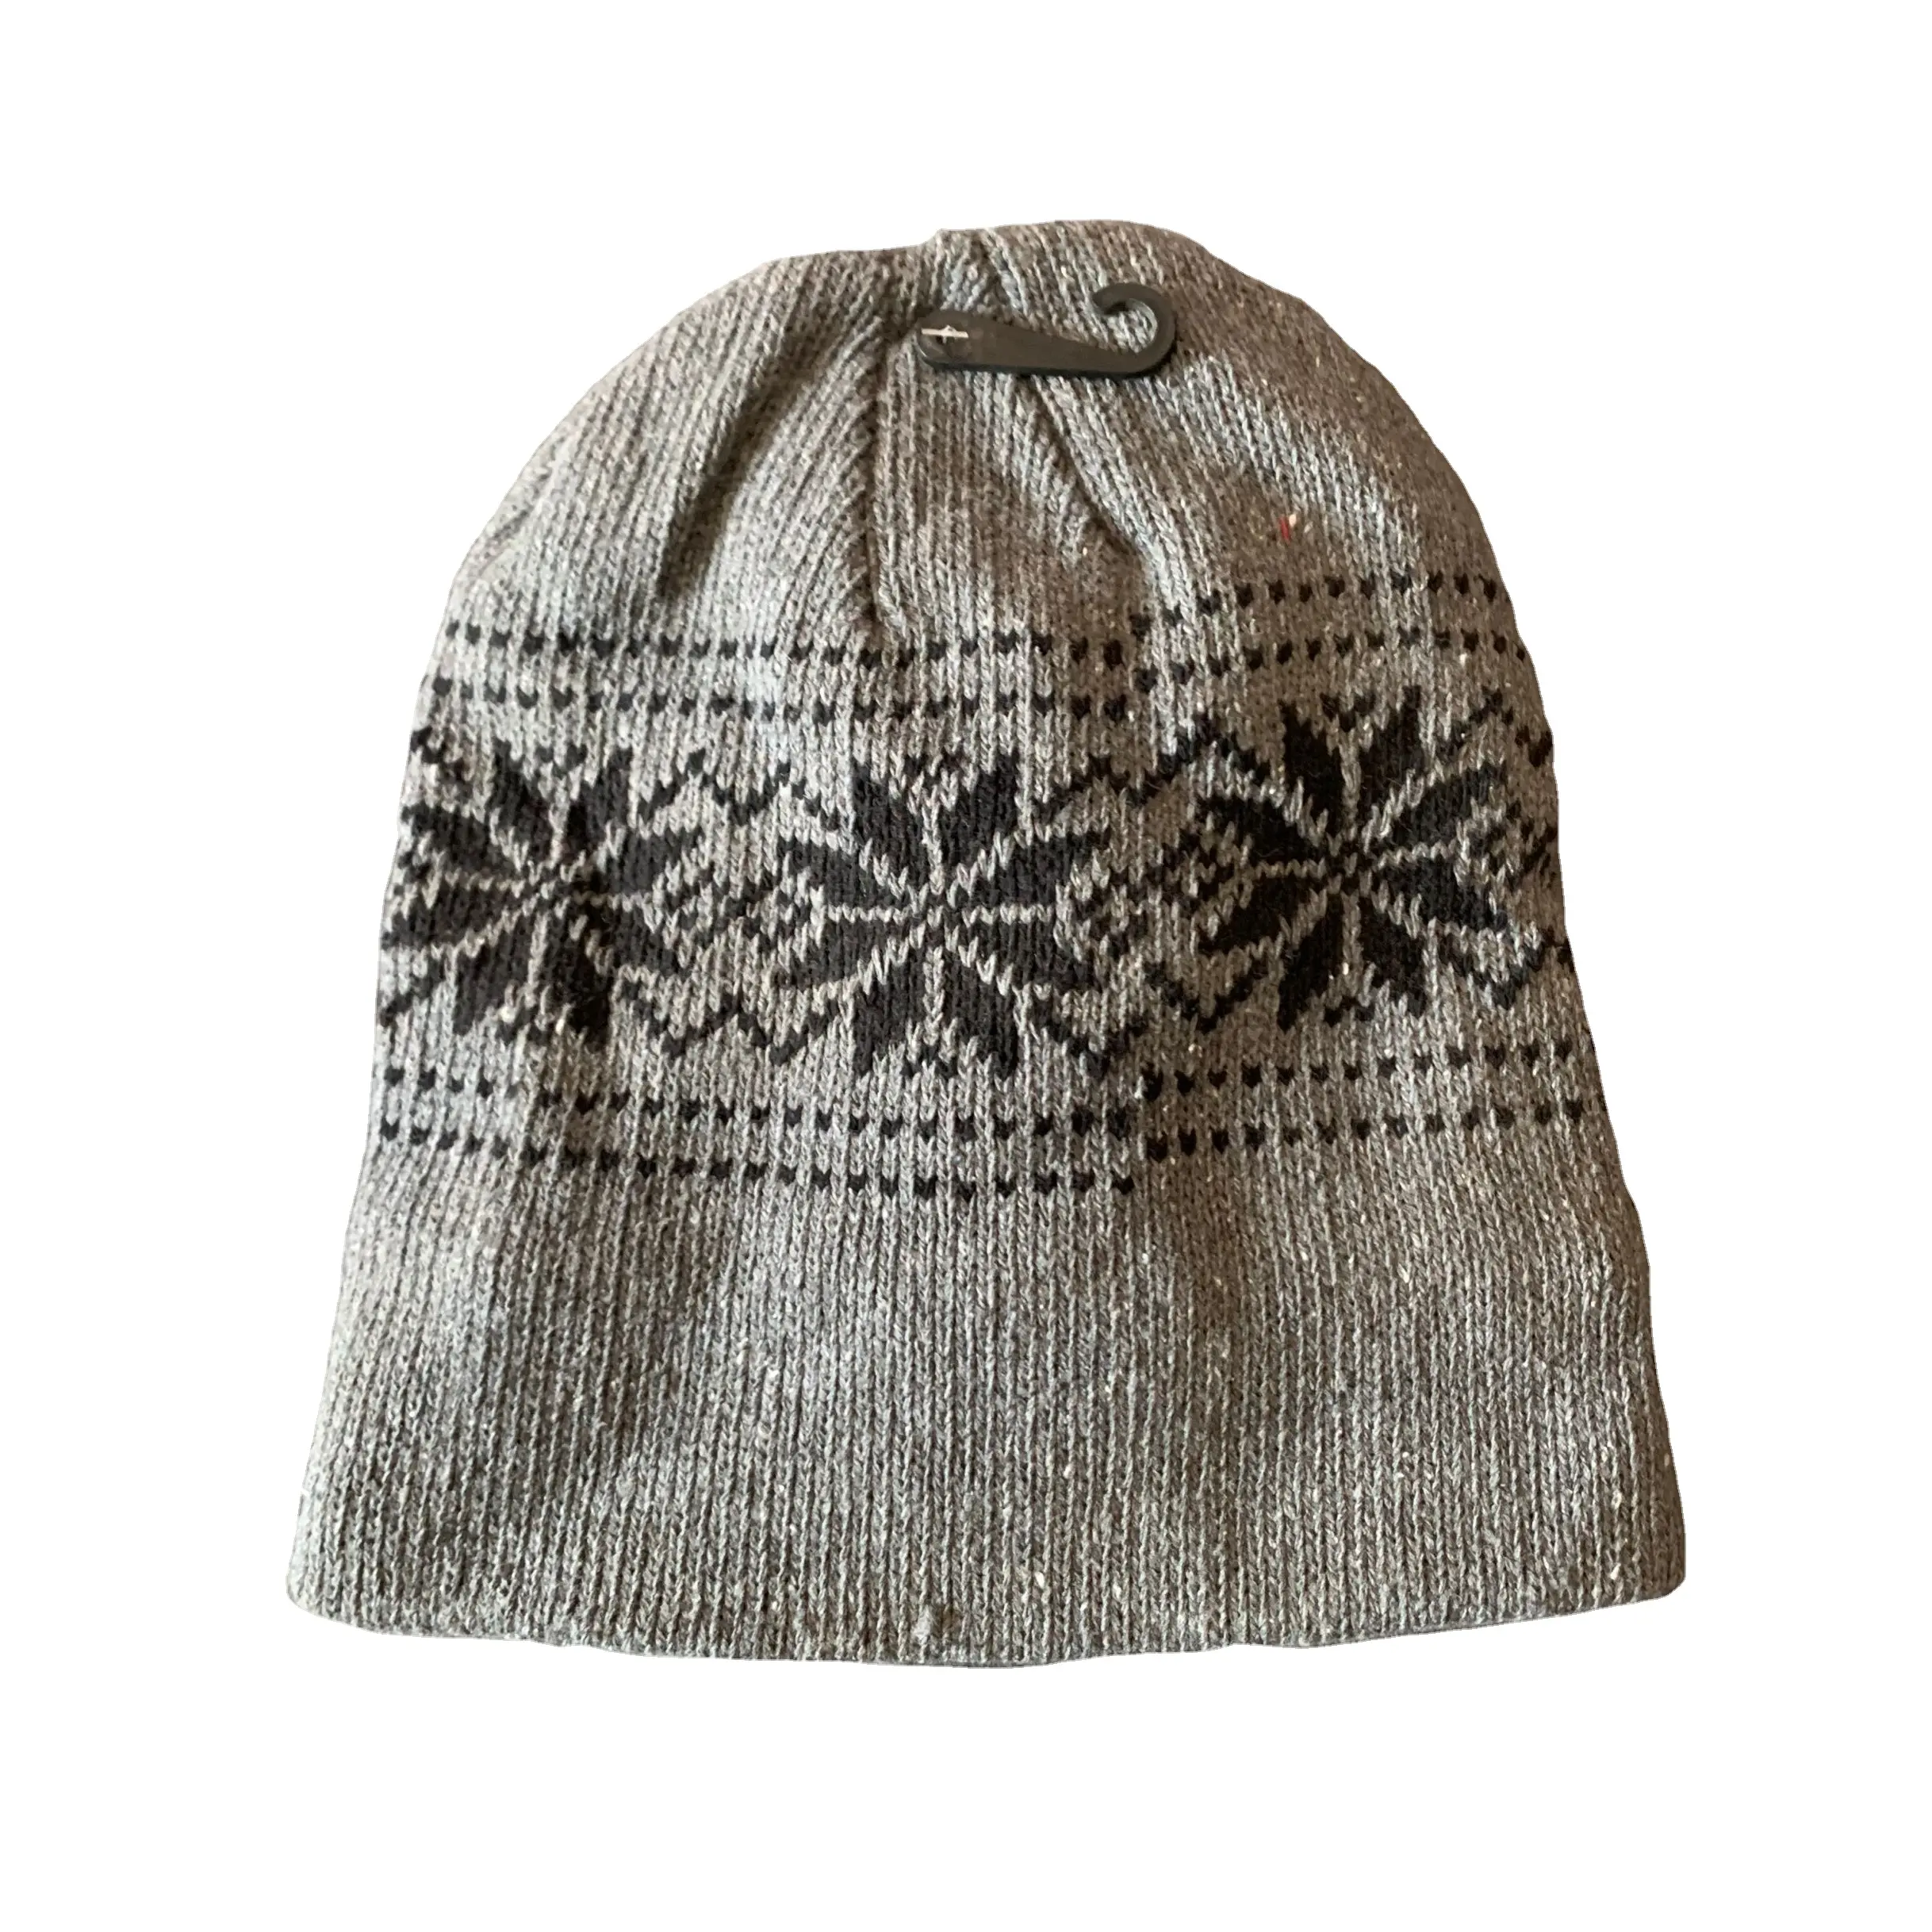 หมวกบีนนี่ถักออกแบบได้ตามต้องการสำหรับผู้หญิงหมวกบีนนี่หมวกบีนนี่ออกแบบได้ตามต้องการสำหรับฤดูหนาว